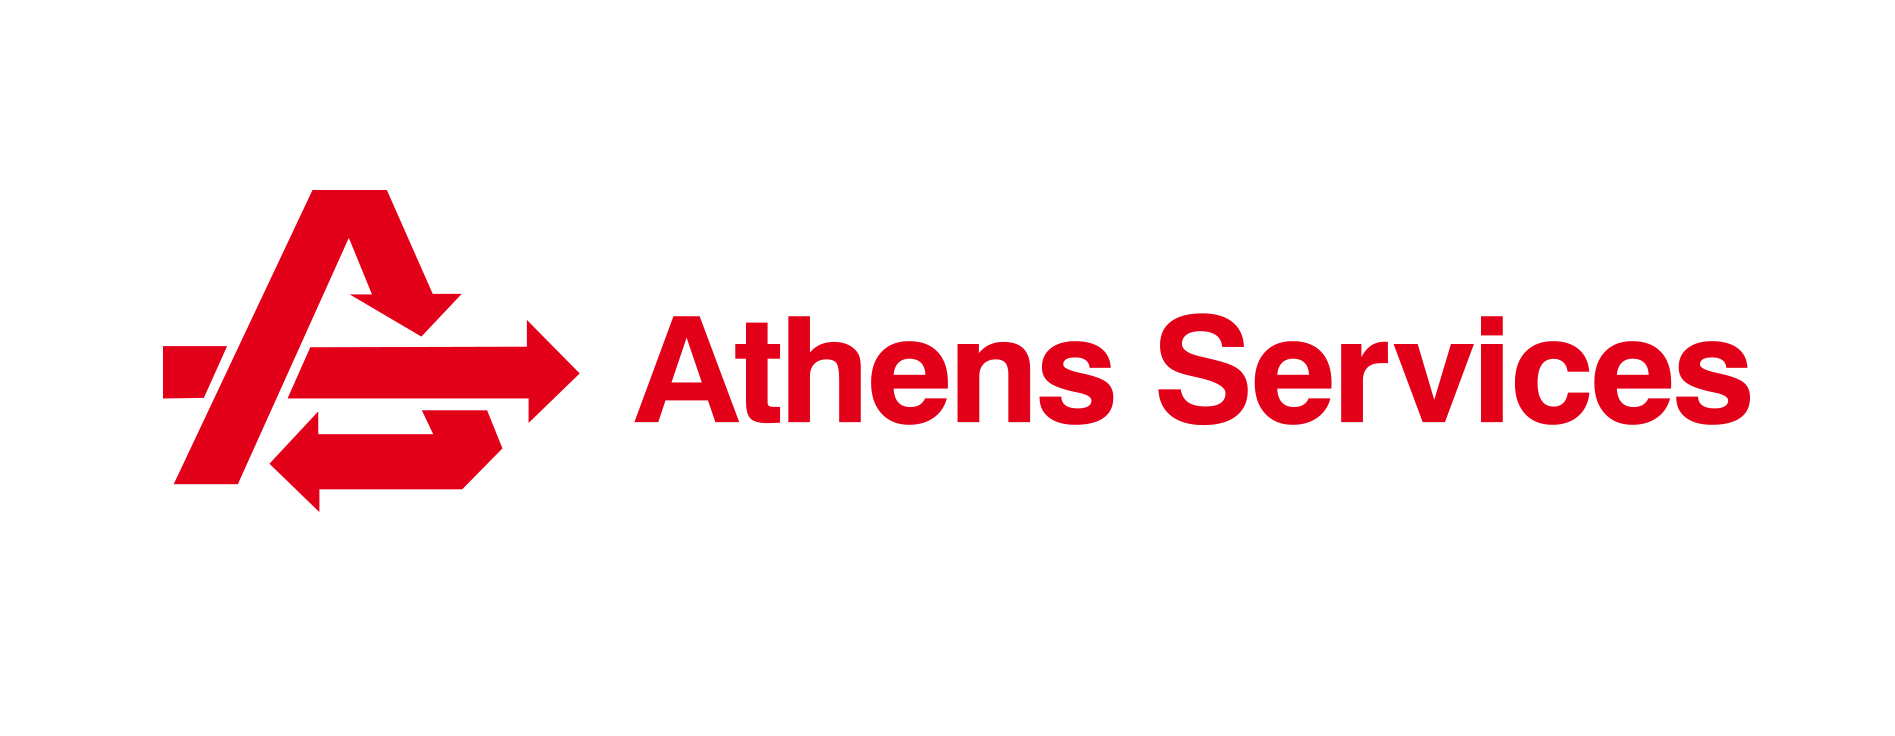 Athens_Logo_Usage_horizontal-1 (1)